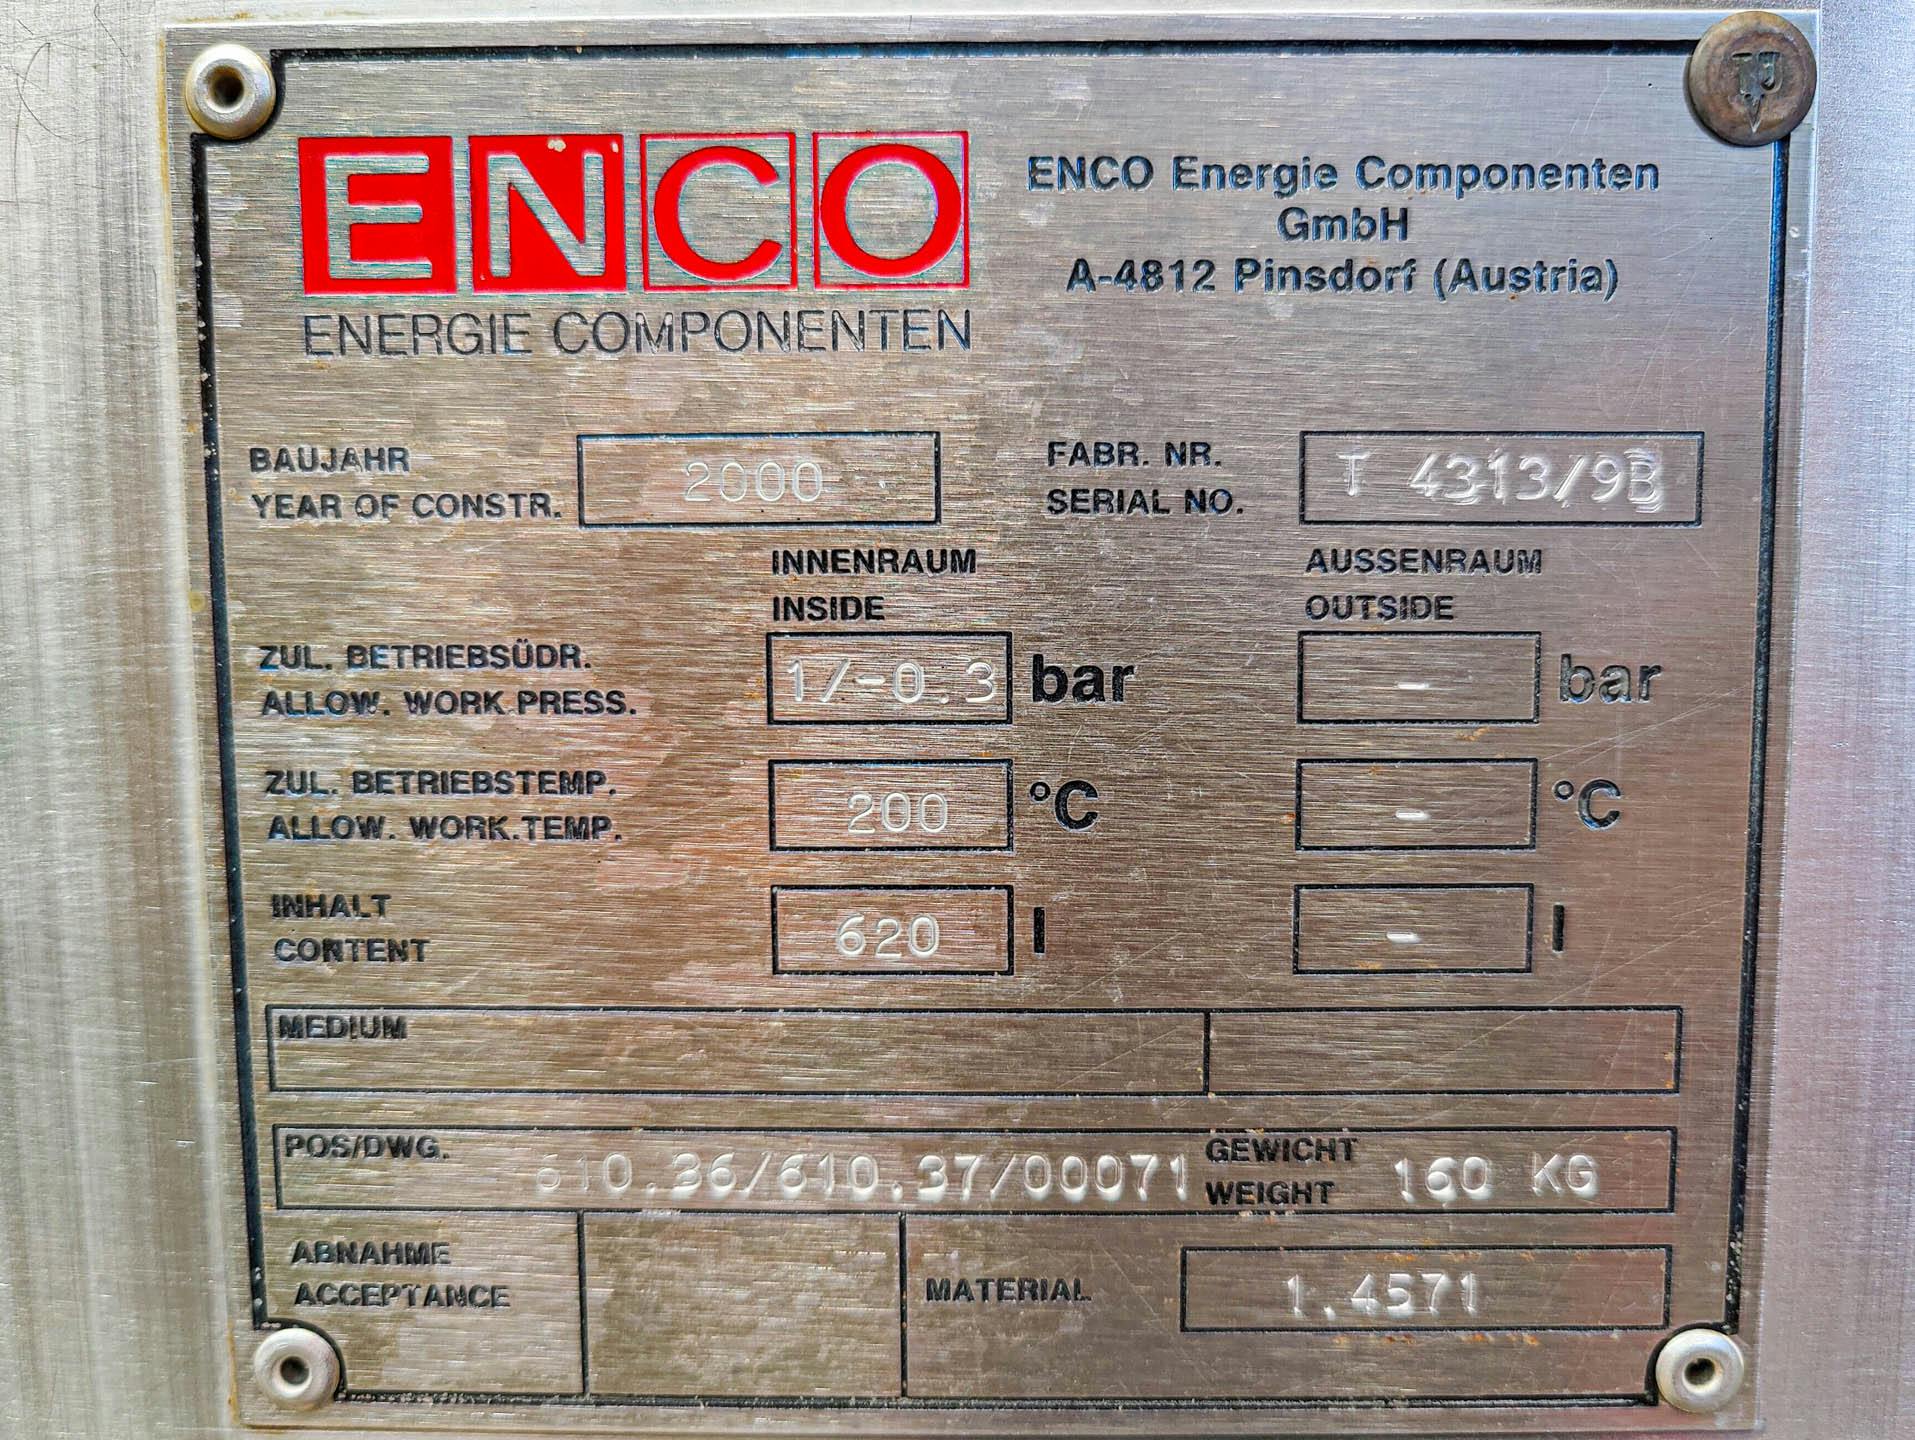 Enco 620 Ltr. - Druckkessel - image 7